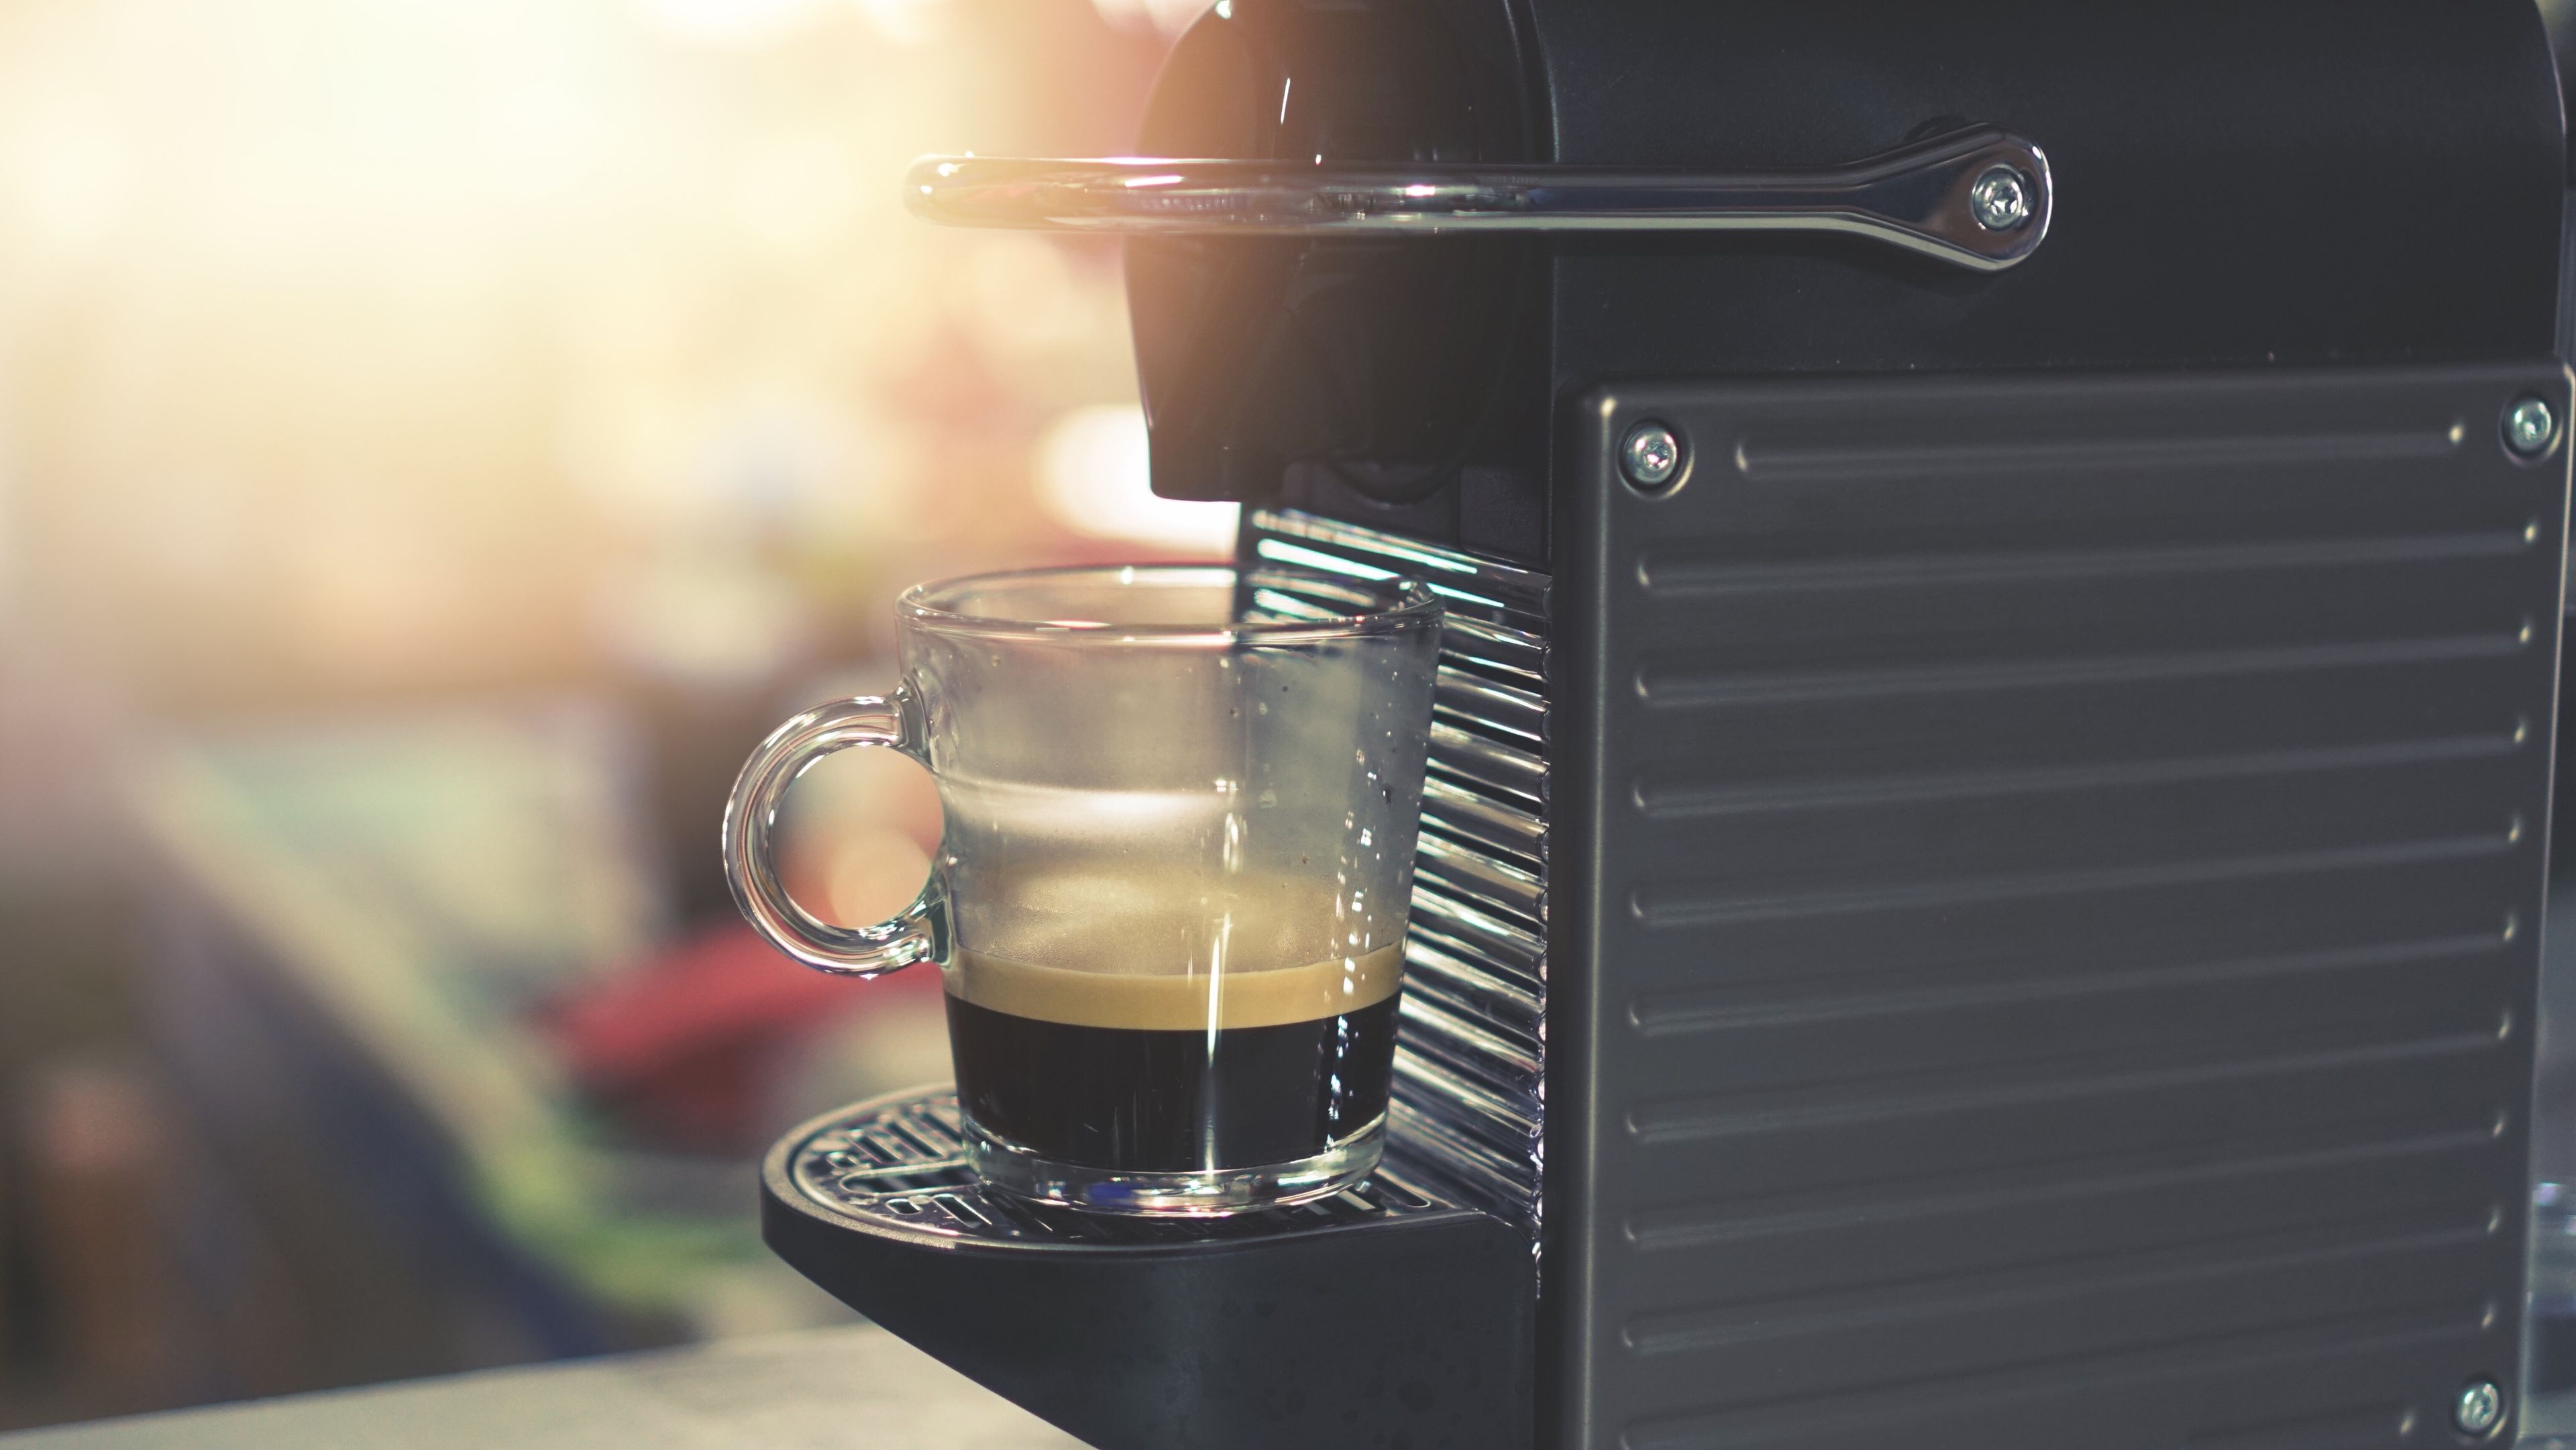 Nespresso permitirá elaborar hasta medio litro de café con una